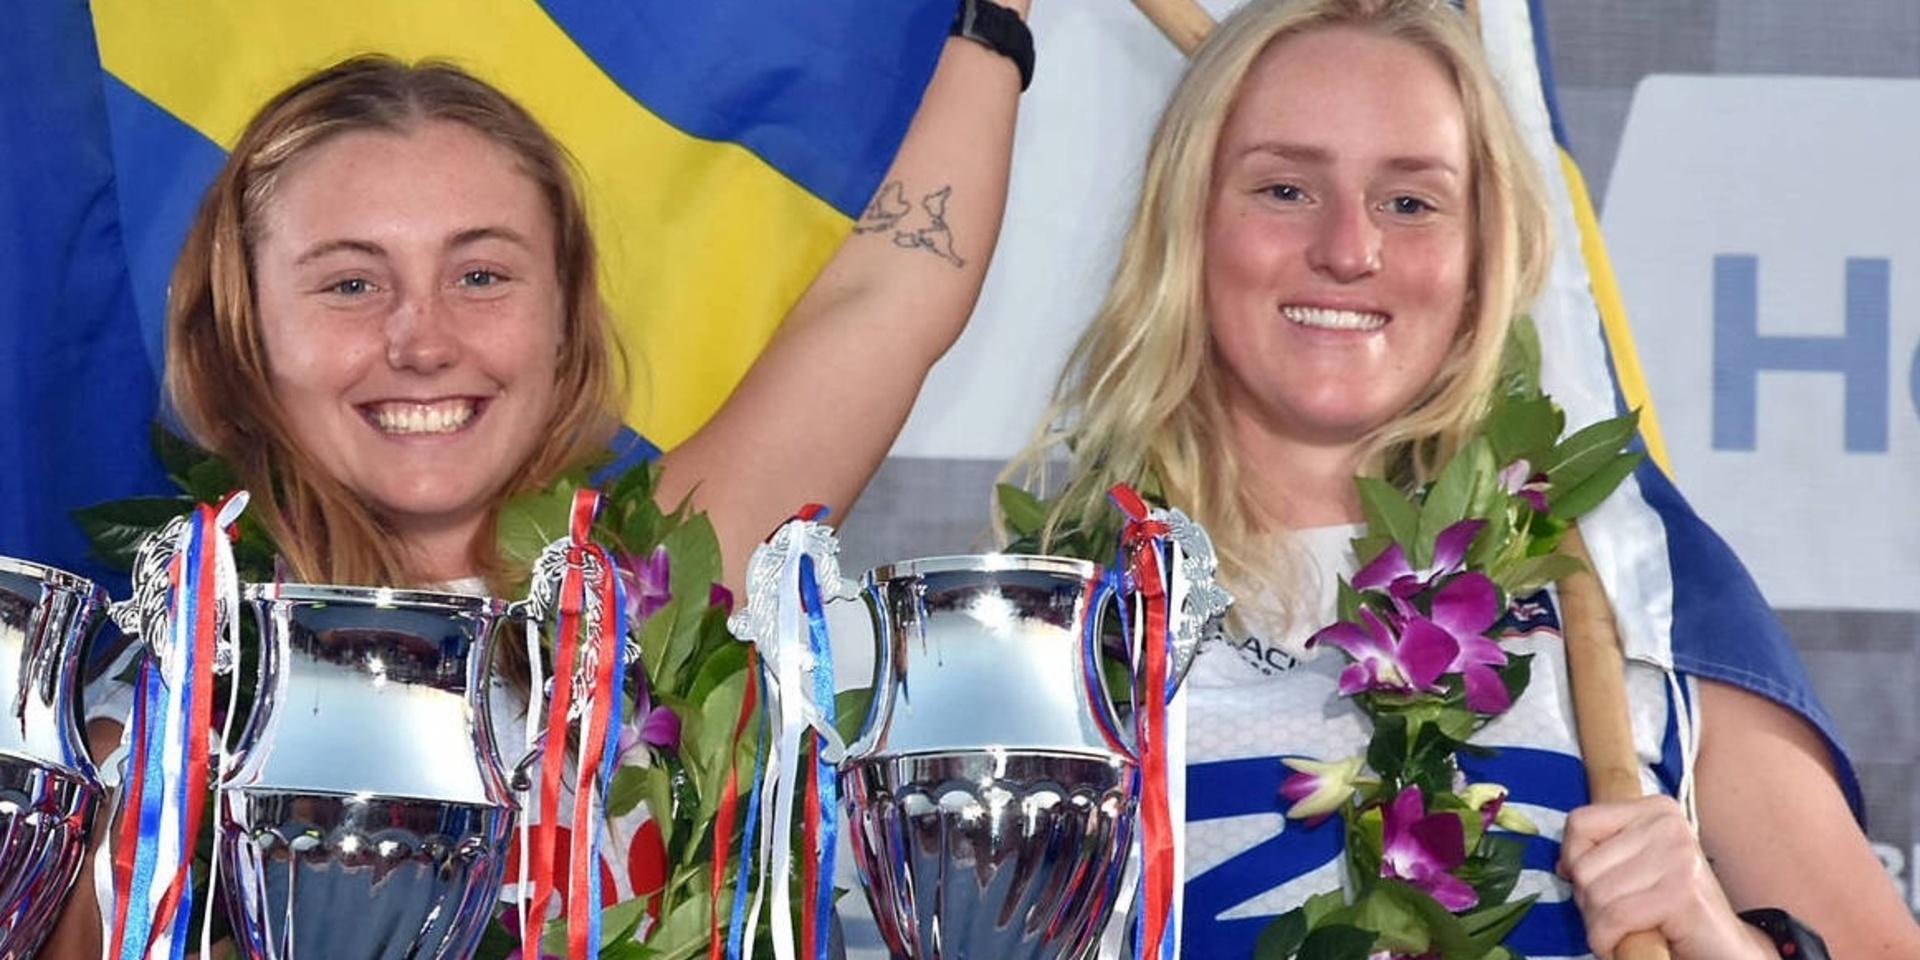 Emma-Nellie Örtendahl och Sofia Borgström från Orust JK är två av Sveriges hopp på damsidan i klassen Ski Ladies när VM i jetski kommande helg inleds i Olbia på Sardinien. Här ses de på pallplatsen i samband med en VM-deltävling hösten 2019  vilket var det senaste året som ett komplett världsmästerskap kunde genomföras.